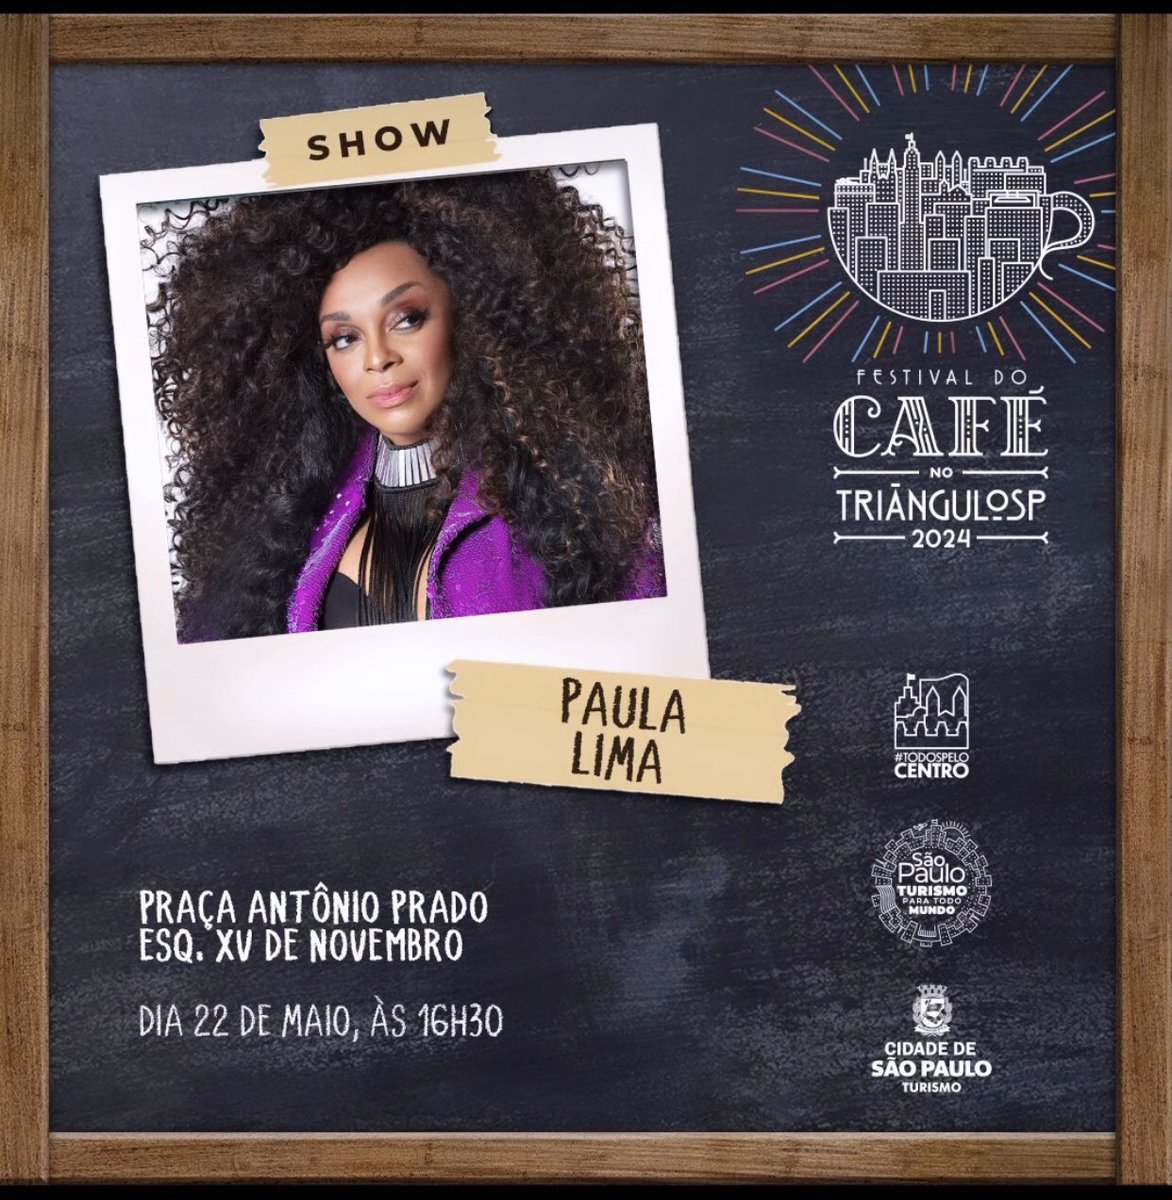 Agenda 
Na próxima quarta-feira dia 22 de Maio tem o Festival do café com show da maravilhosa @paulalima na Praça Antônio Prado no centro de SP #agenda #festivaldocafé #paulalima